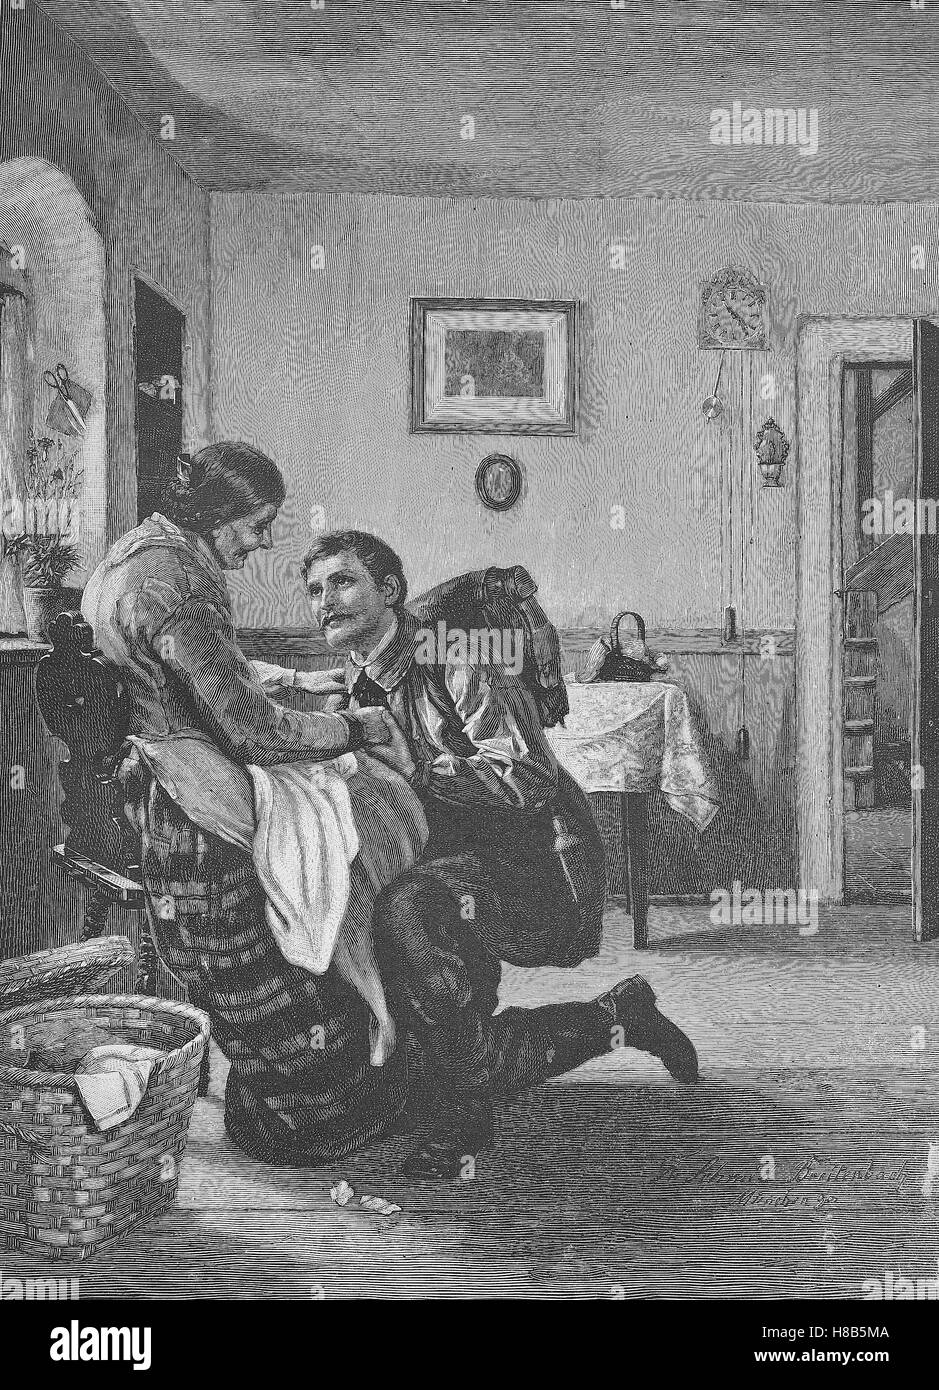 Soldat est arrivé de l'étranger et a salué sa mère, gravure sur bois de 1892 Banque D'Images